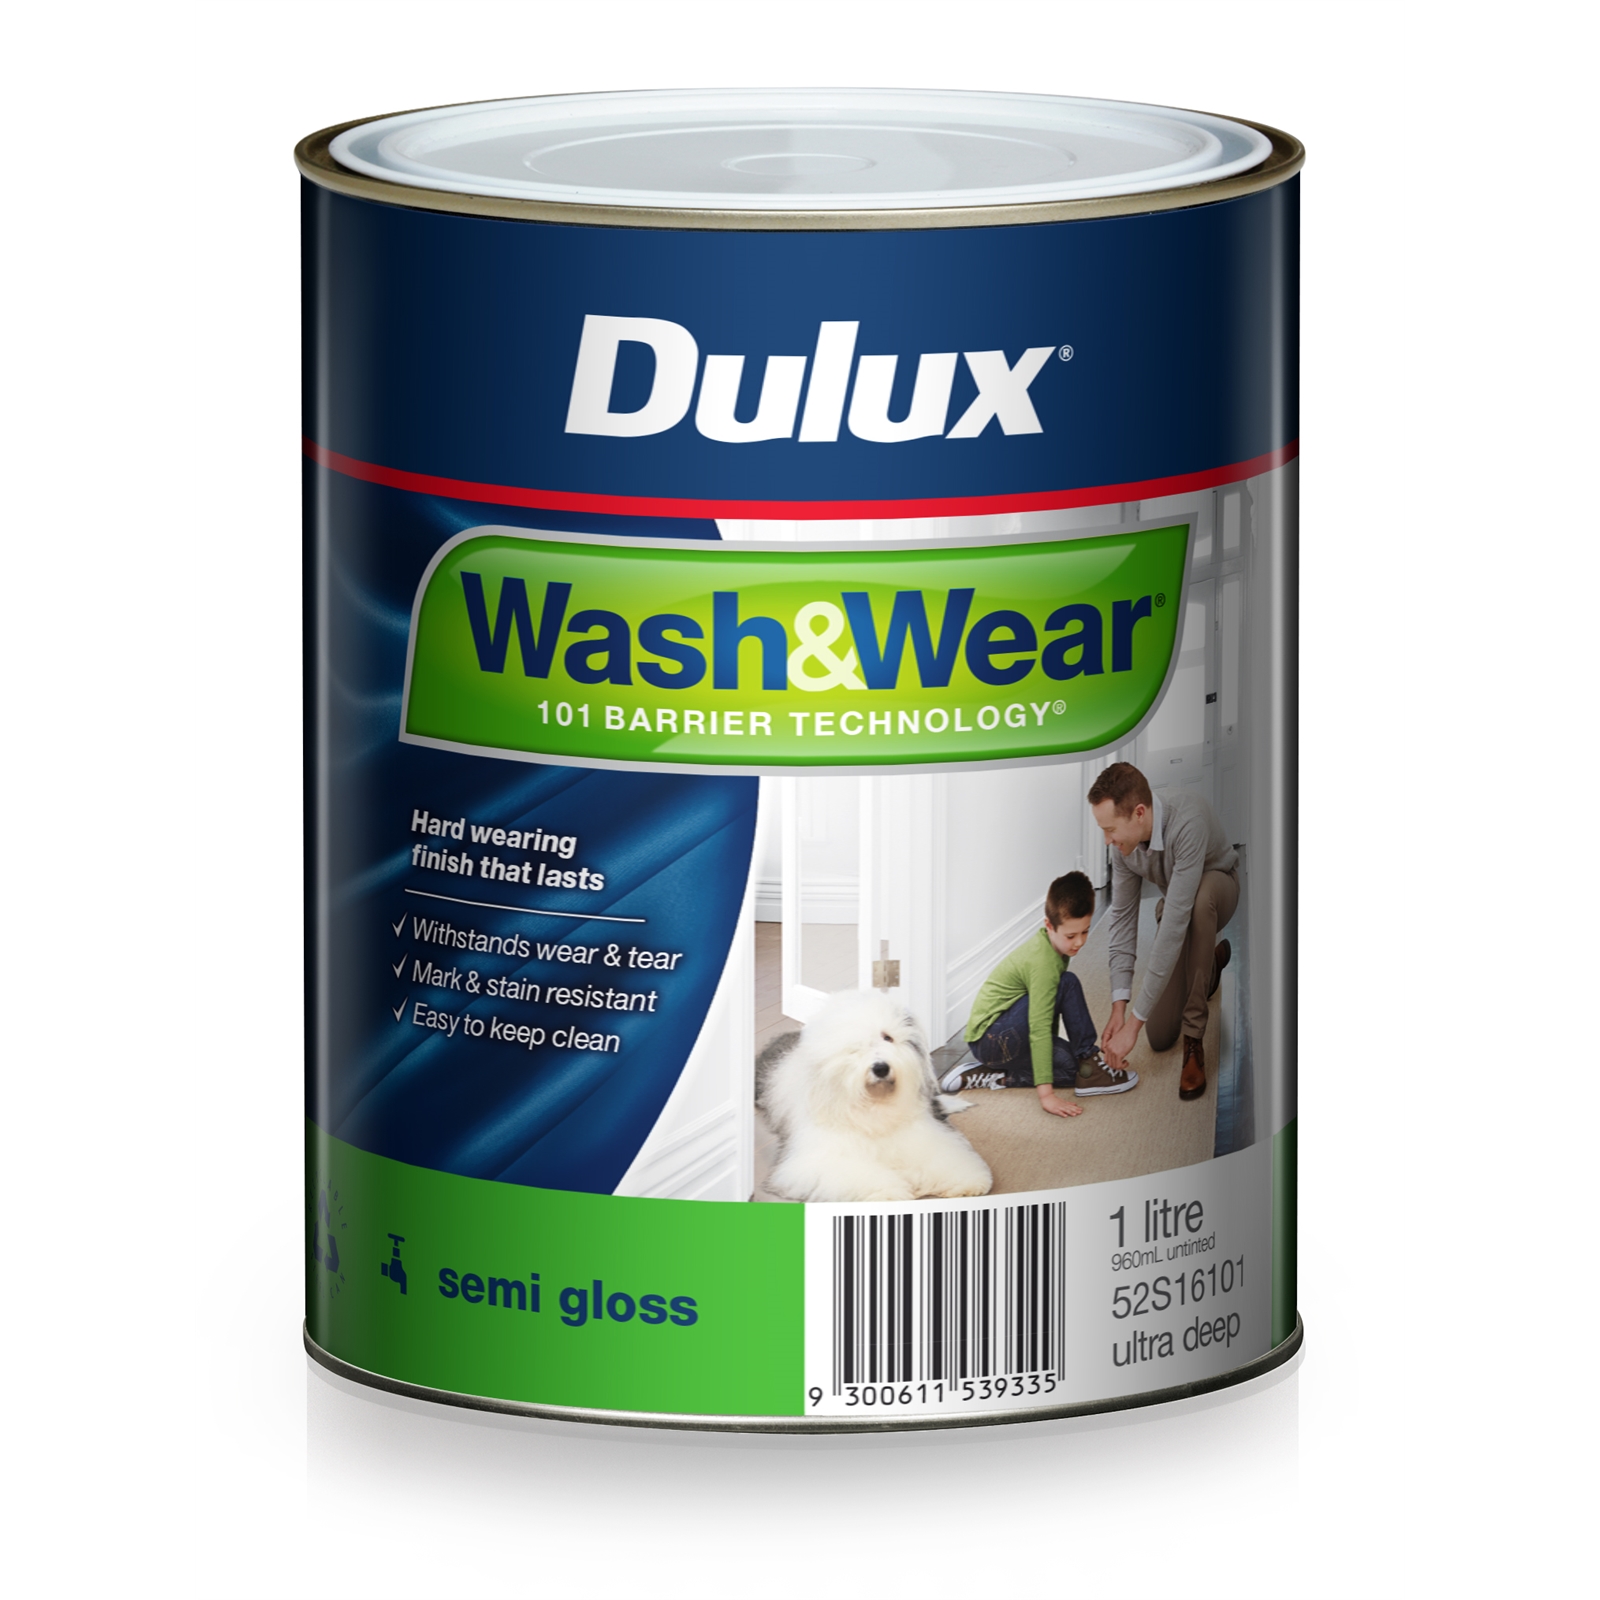 Dulux Wash&Wear 1L Ultra Deep Semi Gloss Paint